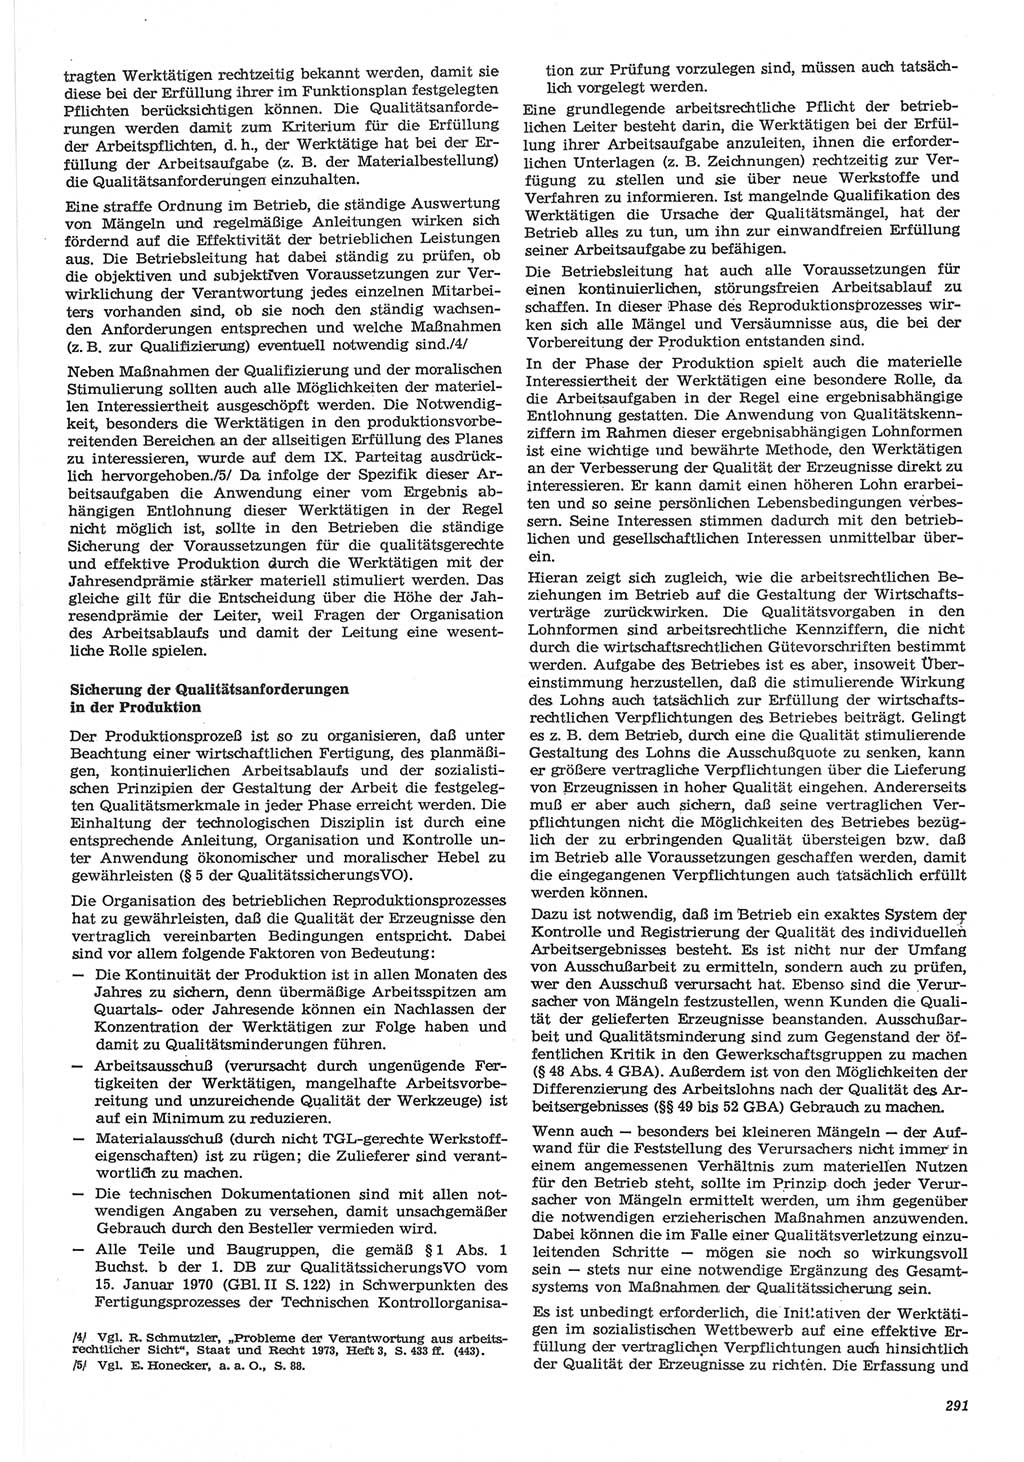 Neue Justiz (NJ), Zeitschrift für Recht und Rechtswissenschaft-Zeitschrift, sozialistisches Recht und Gesetzlichkeit, 31. Jahrgang 1977, Seite 291 (NJ DDR 1977, S. 291)